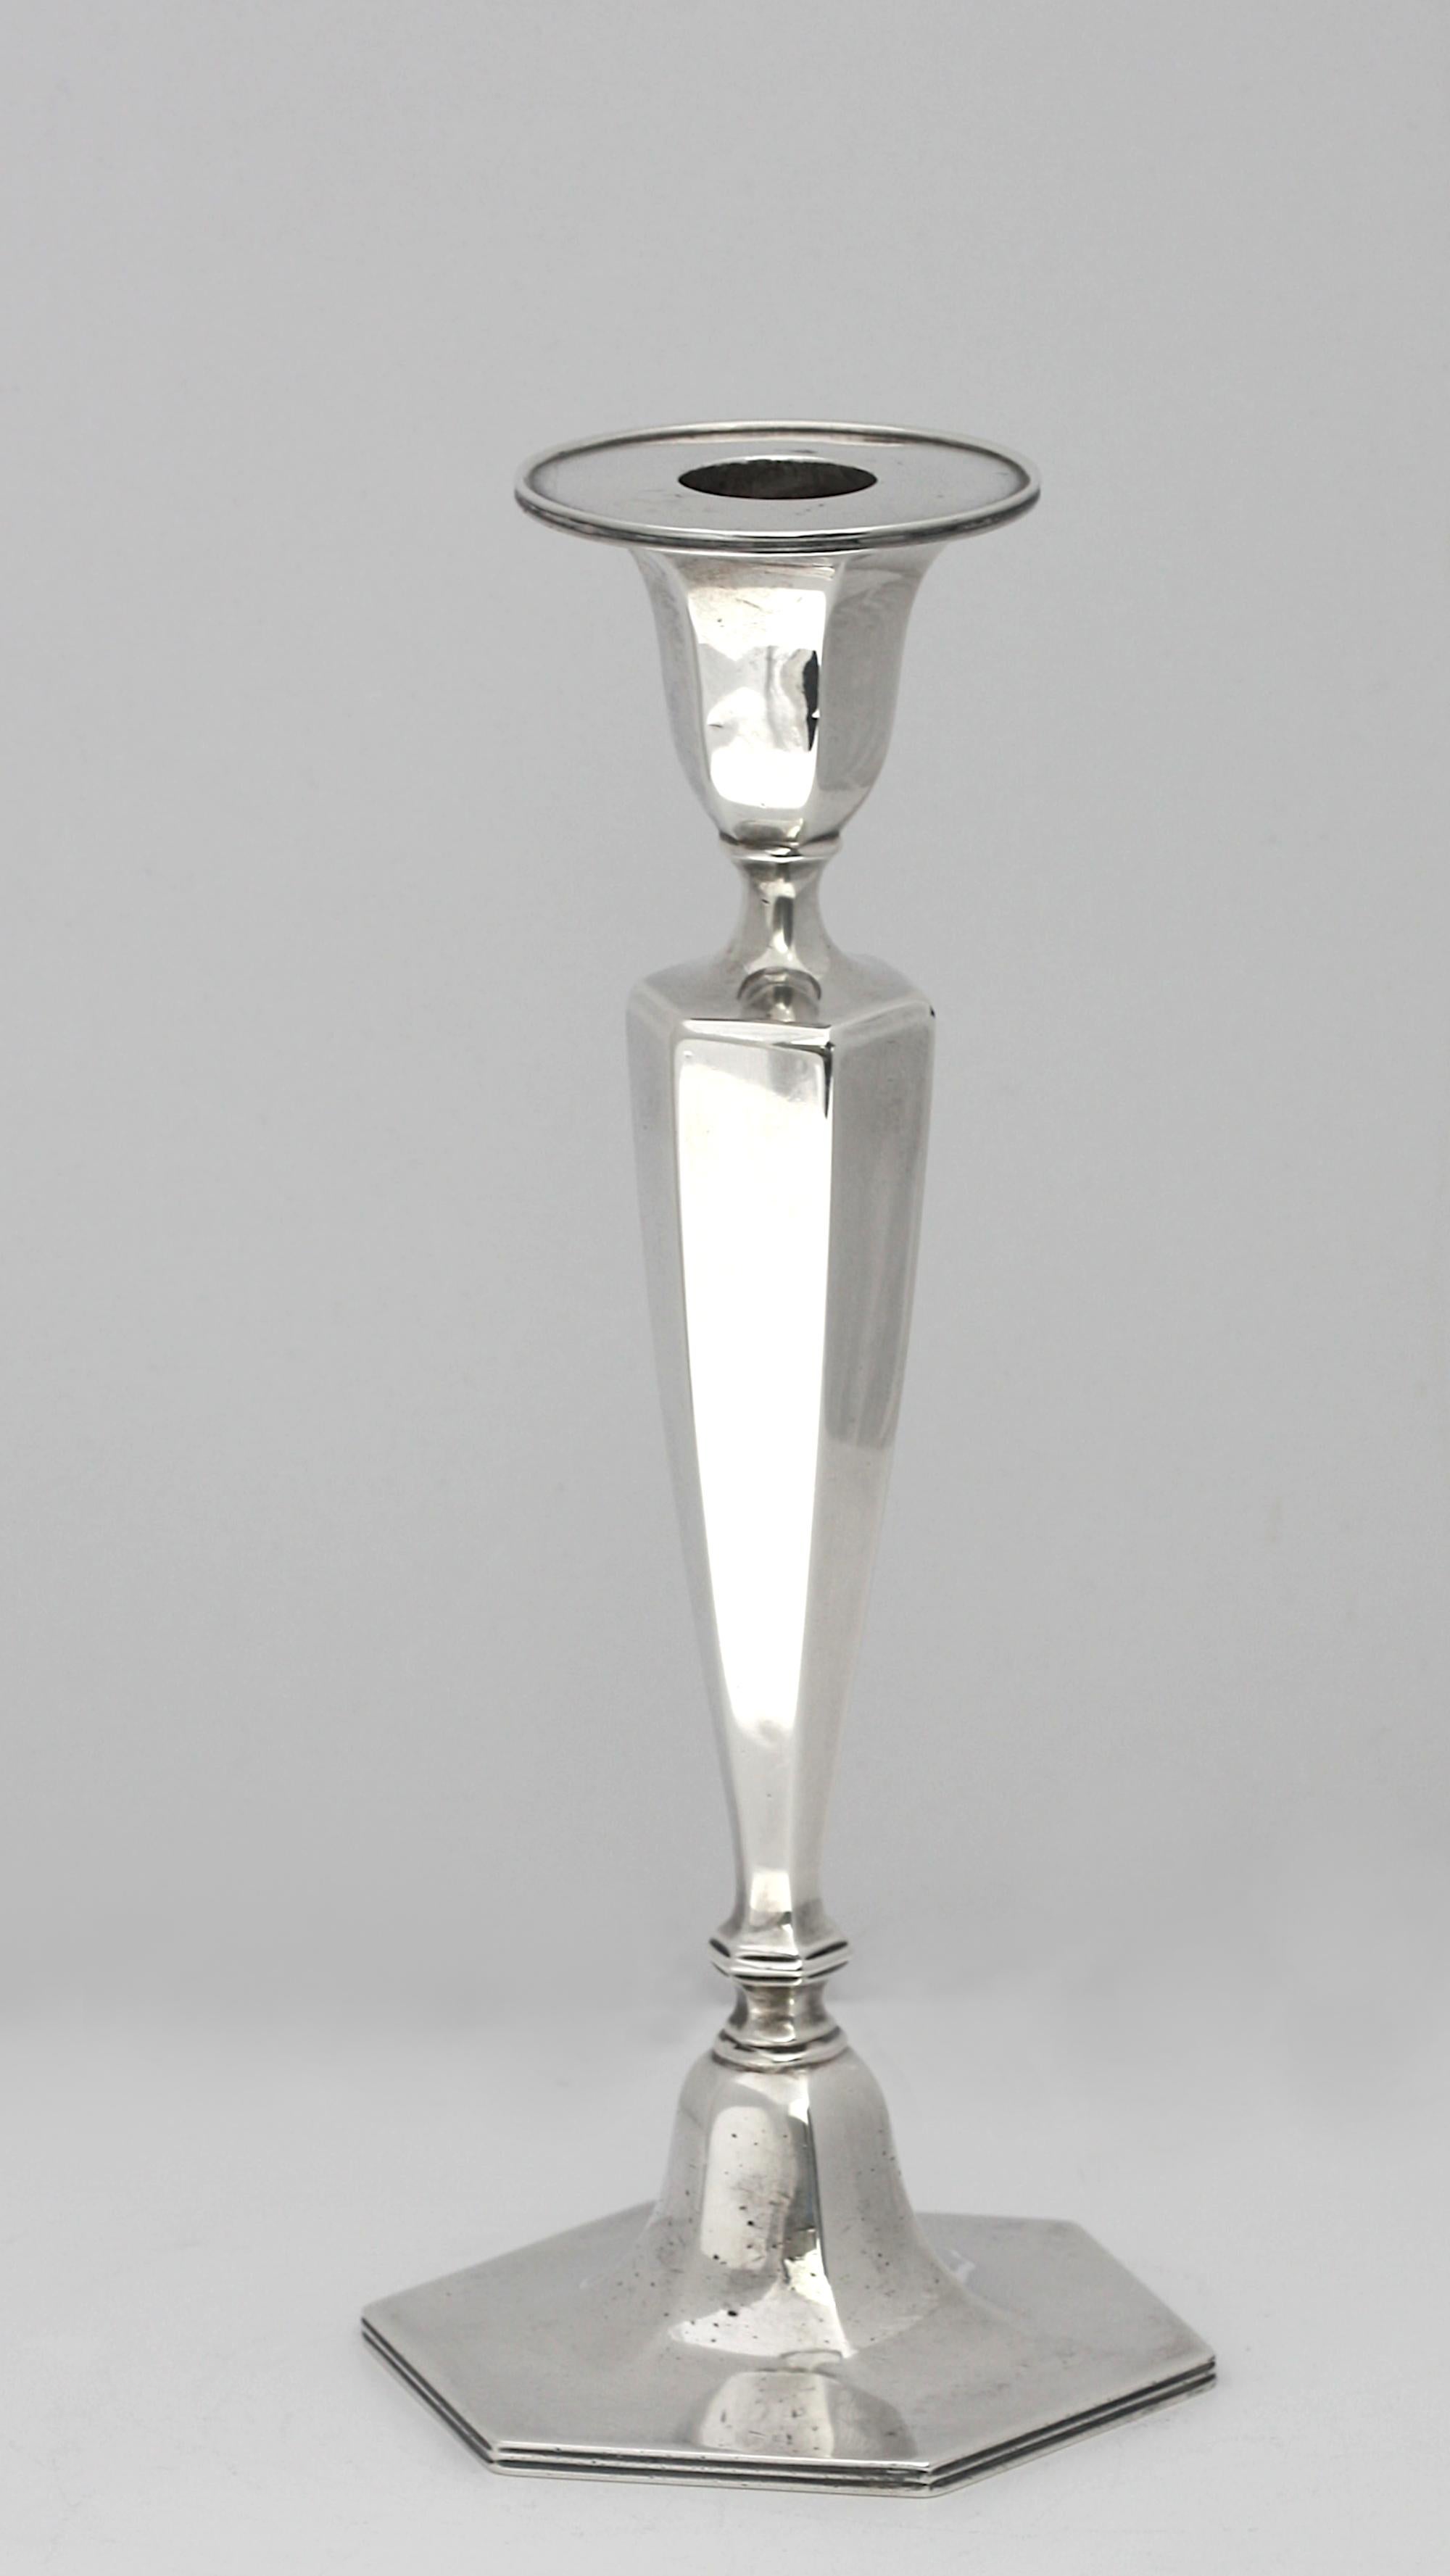 Chandelier américain en argent sterling 
1907-1938, Tiffany & Co. De forme hexagonale classique et effilée, base remplie de ciment.
Hauteur 22,86 cm (9 in.) Poids approximatif 14,2 oz t.